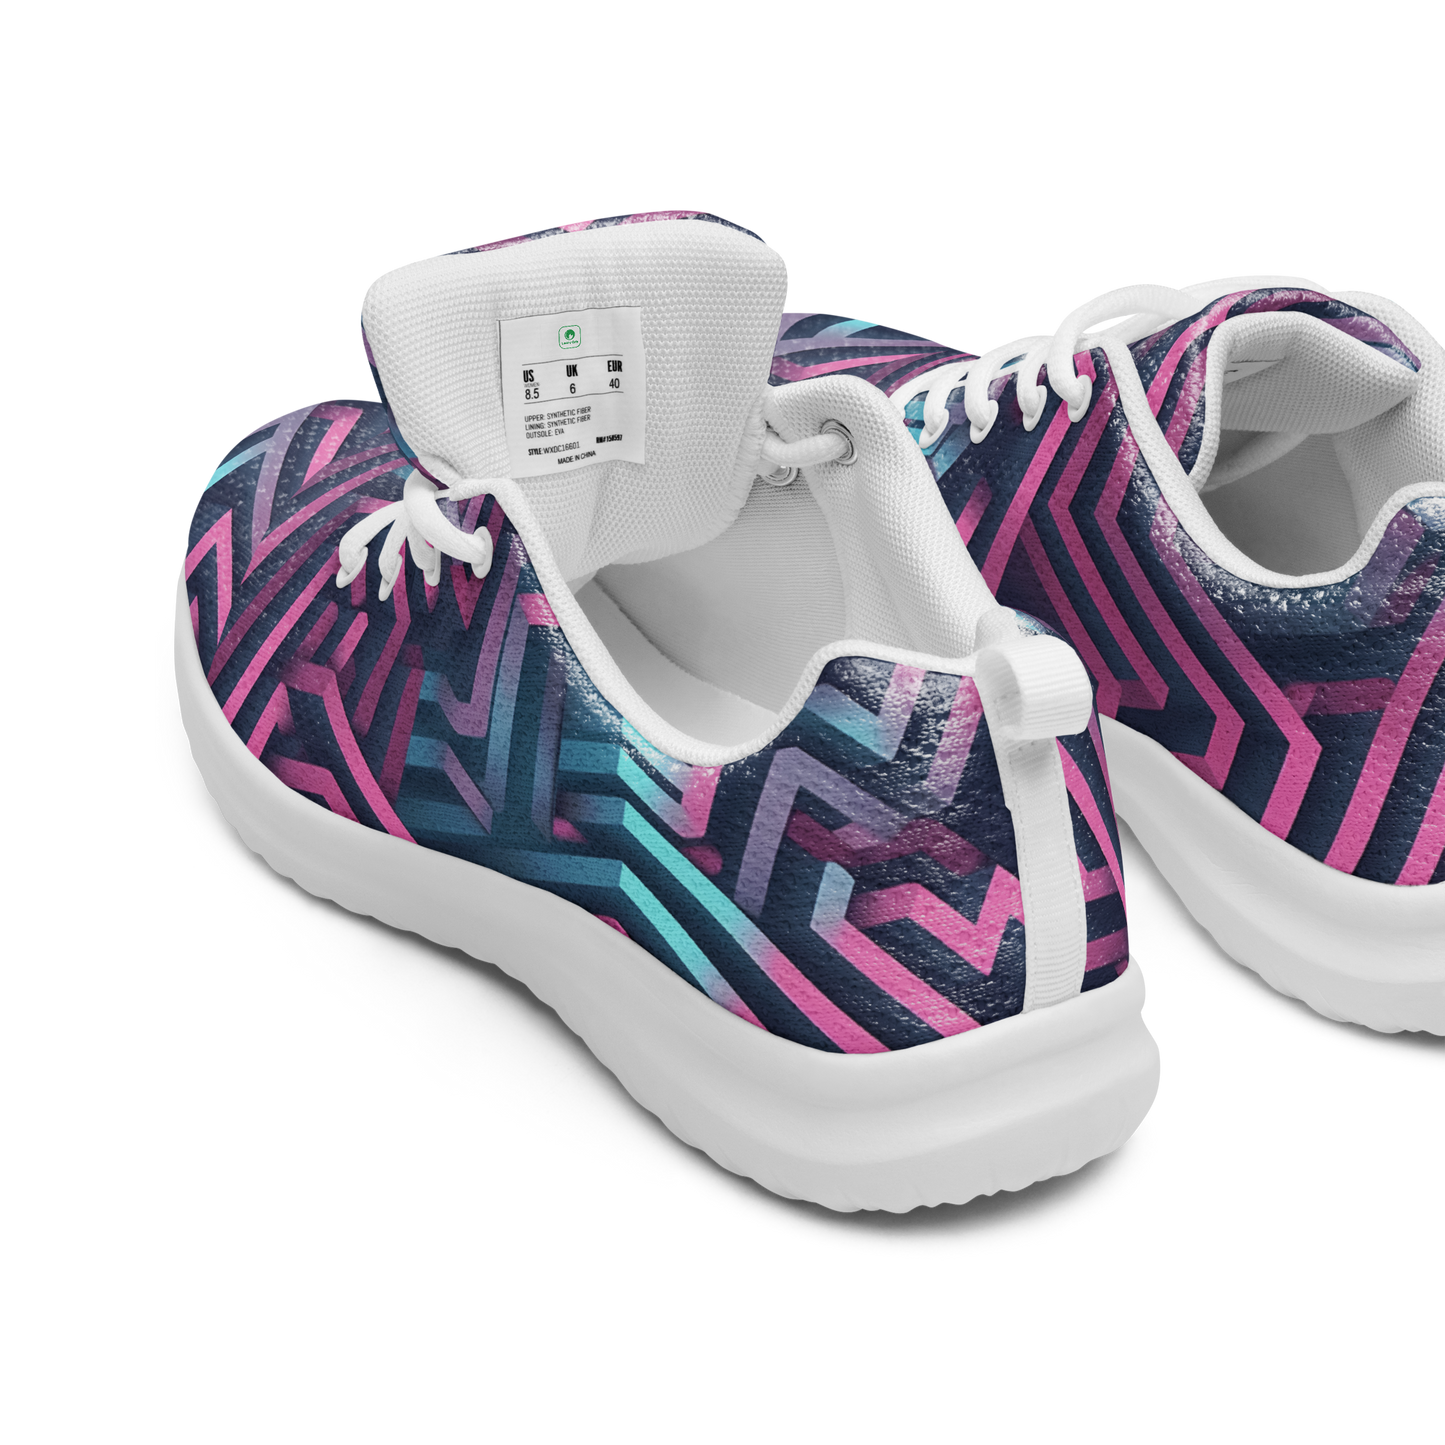 3D Maze Illusion | 3D Patterns | Men's Athletic Shoes - #4